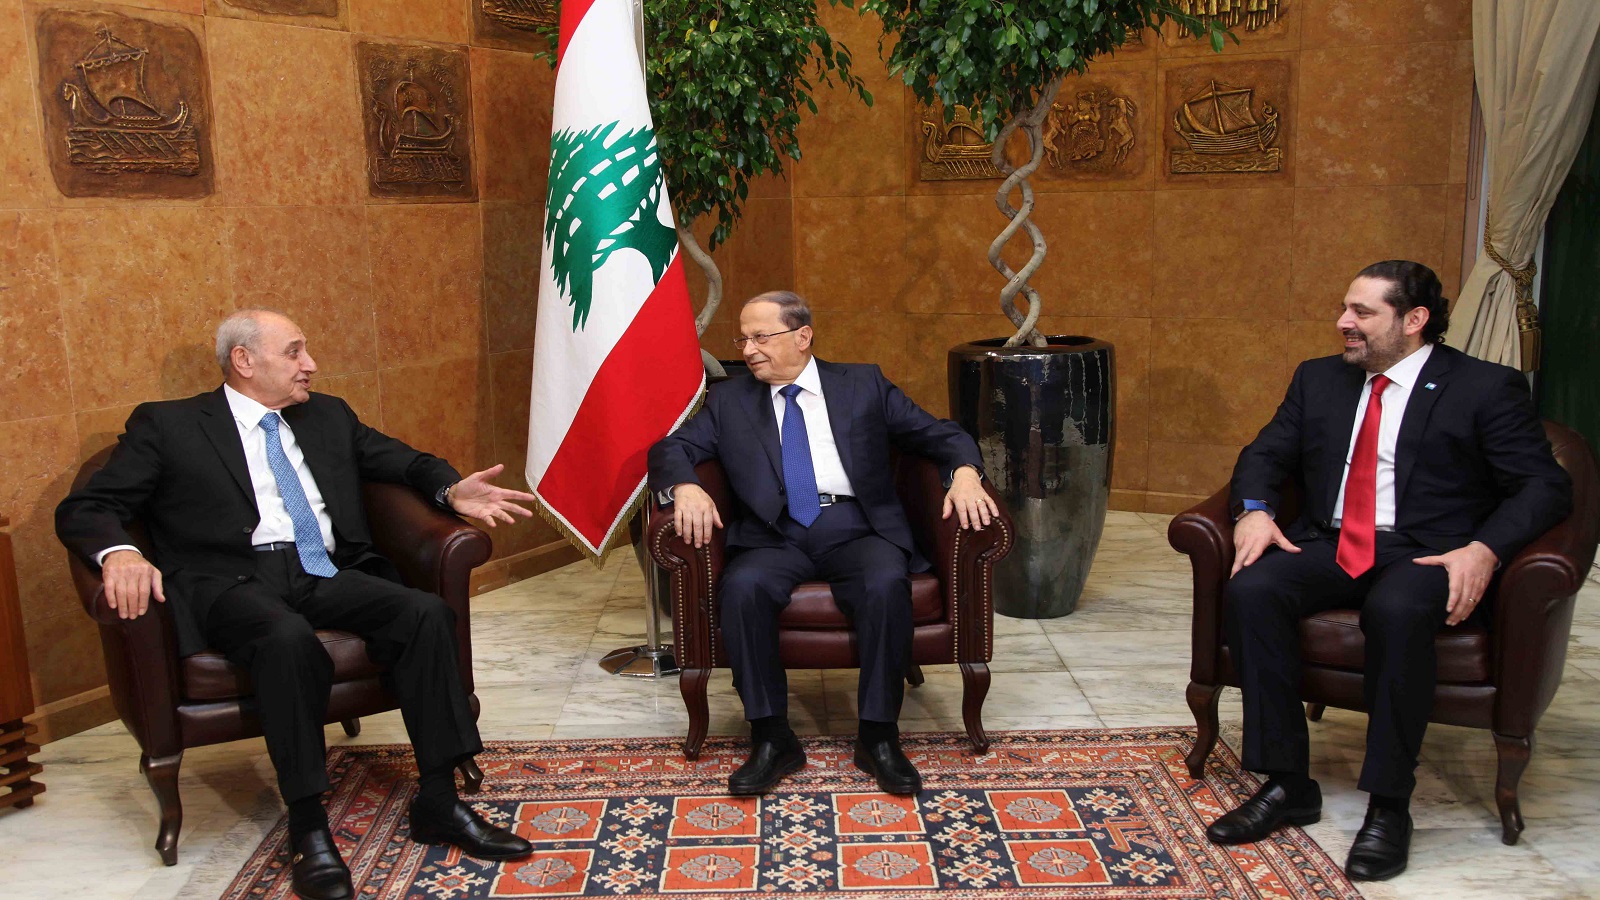 السلطة تبتكر النكات.. لكن على مَن يضحك اللبنانيون؟